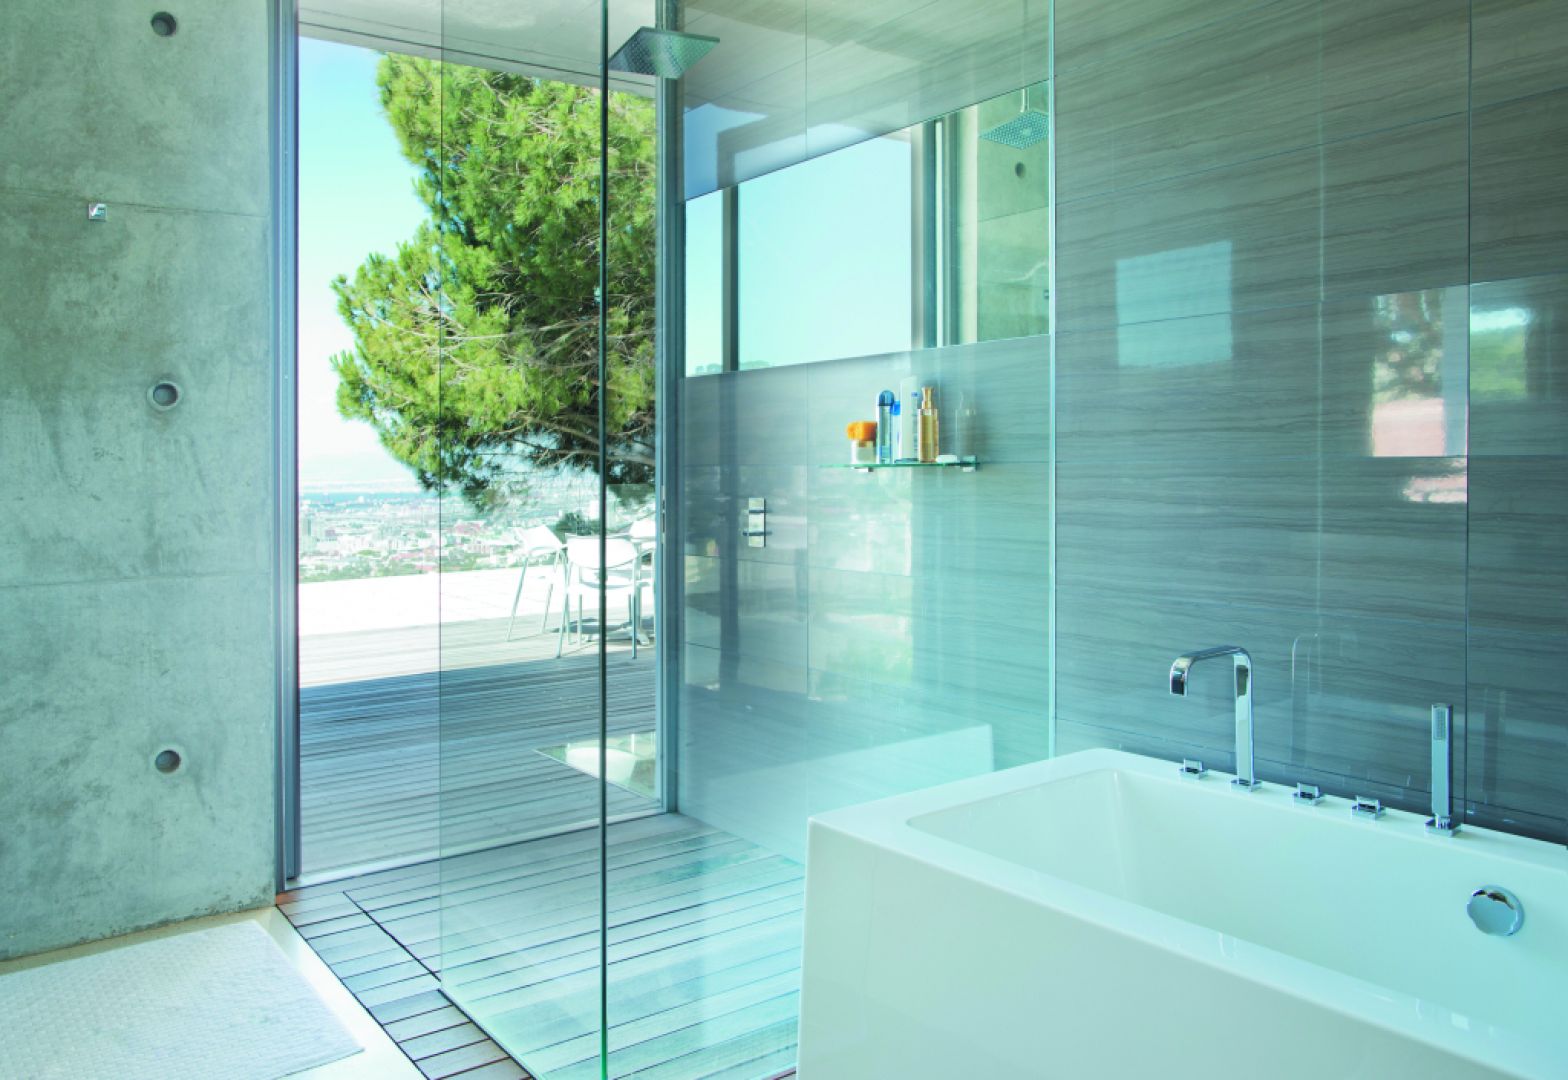 Montaż tego innowacyjnego szkła w kabinie prysznicowej czy też parawanie nawannowym pozwala oszczędzić czas, poświęcany dotychczas na żmudne sprzątanie. Fot. Saint-Gobain